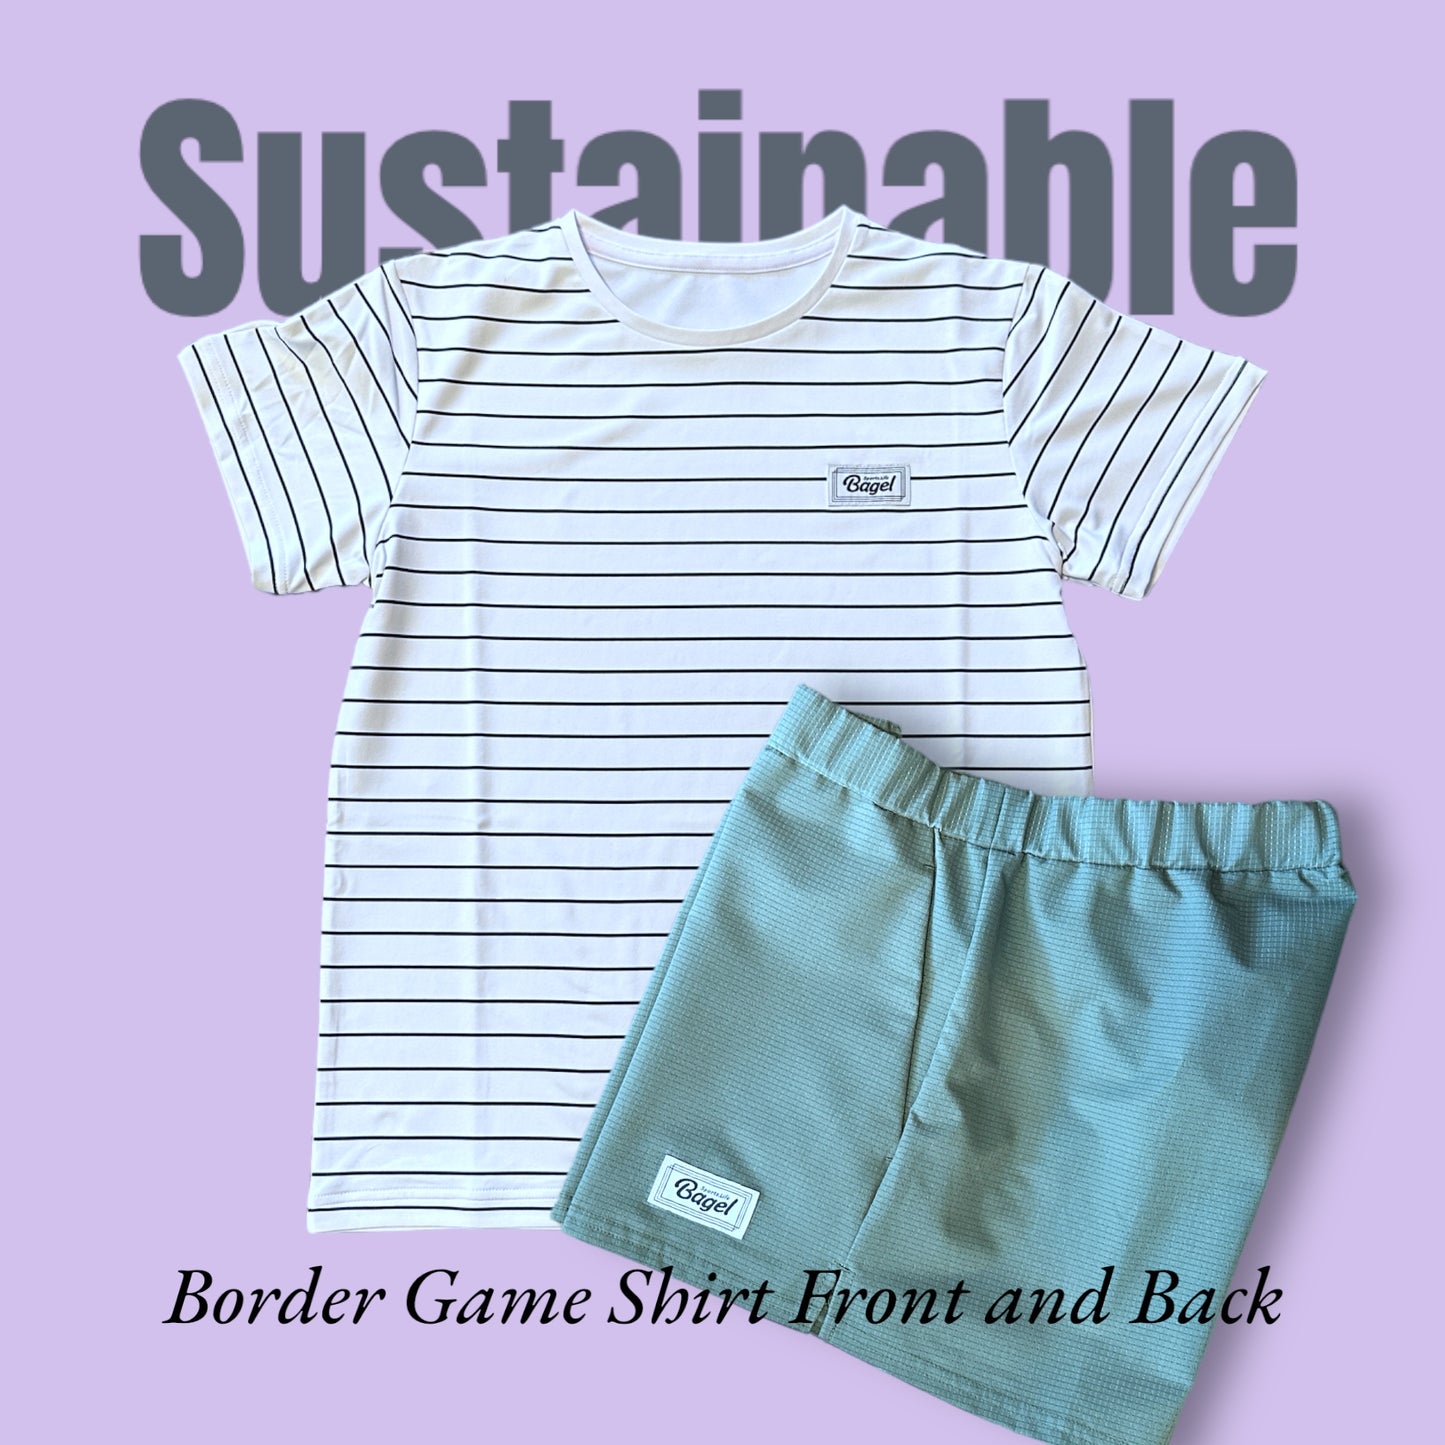 LADIES Sustainable BorderFB 游戏衬衫白色